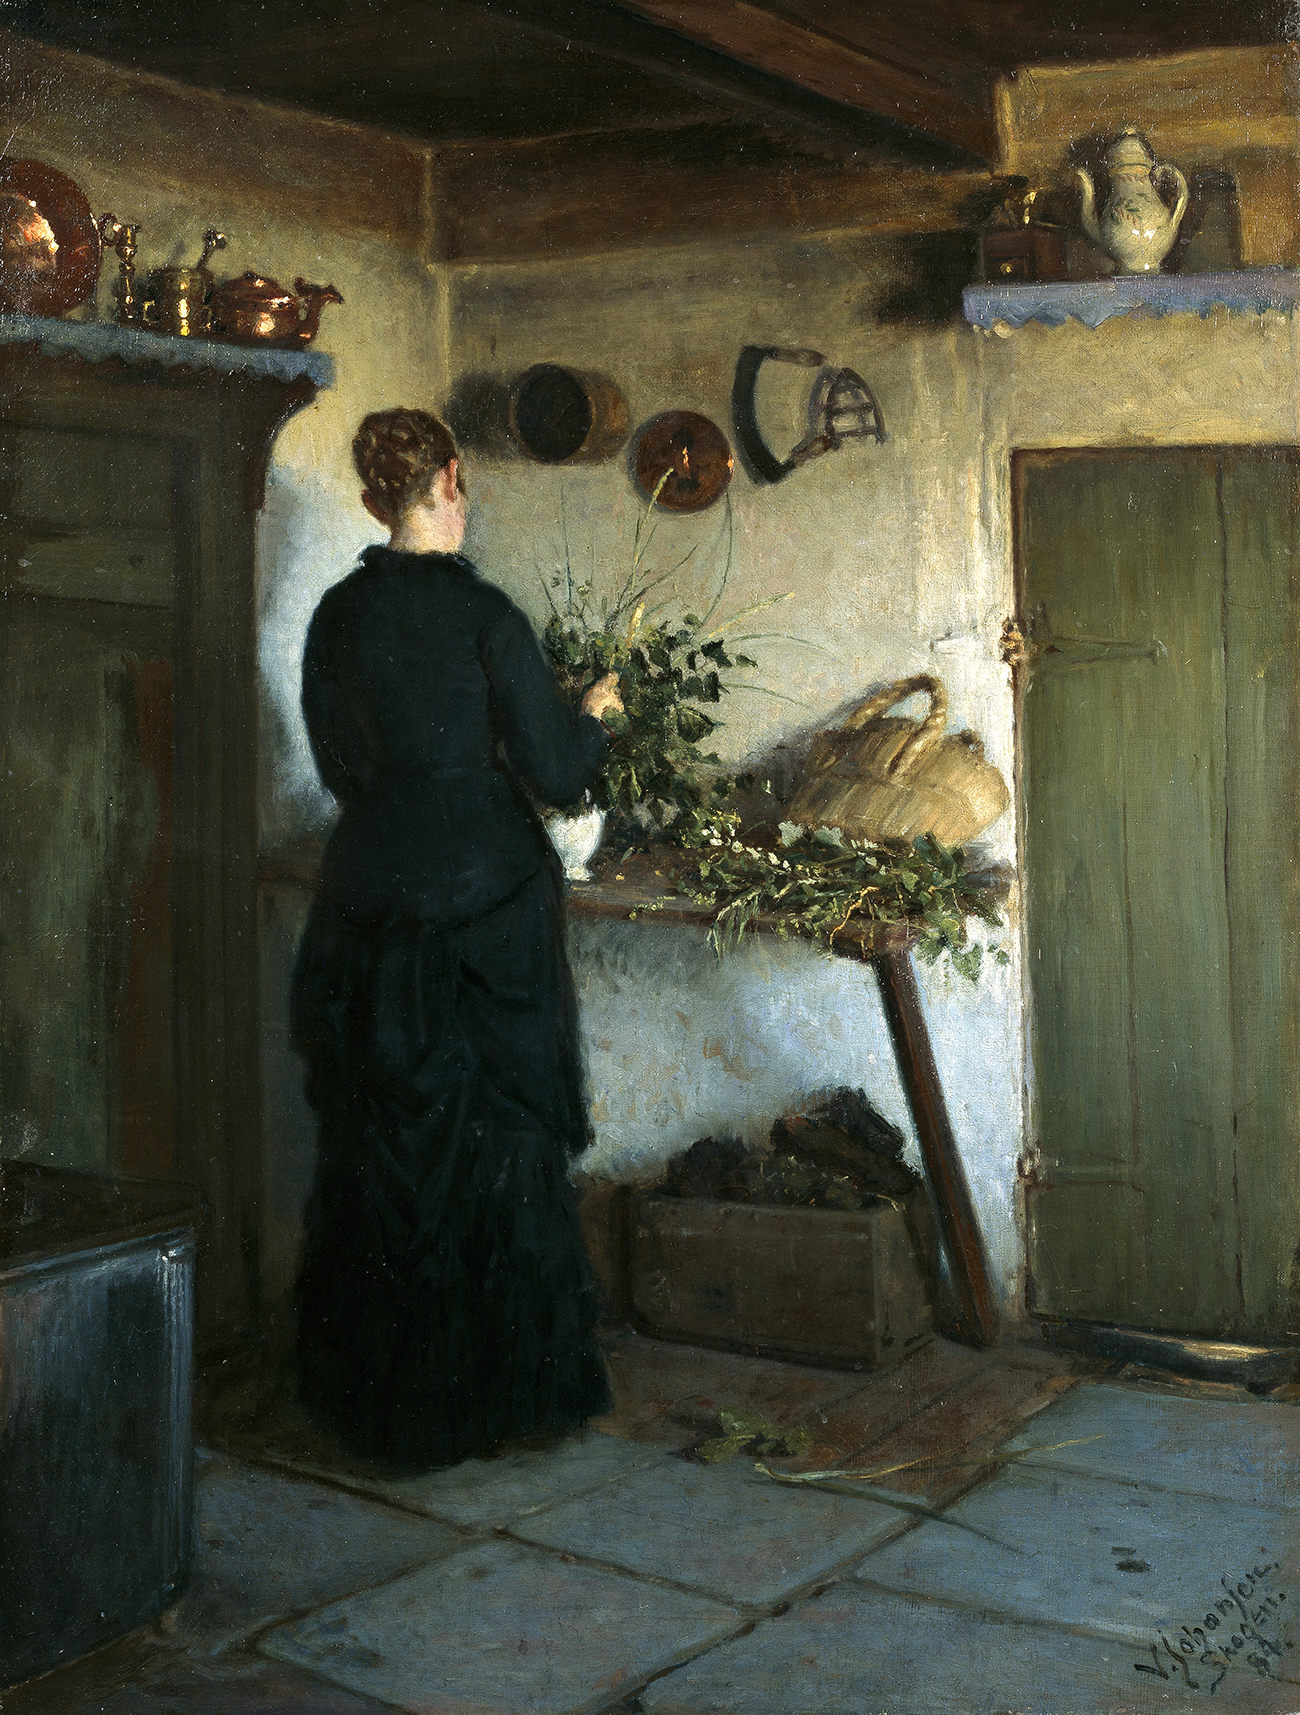 Keukeninterieur. De vrouw van de kunstenaar schikt bloemen by Viggo Johansen - 1884 - 84 x 64 cm Skagens Kunstmuseum